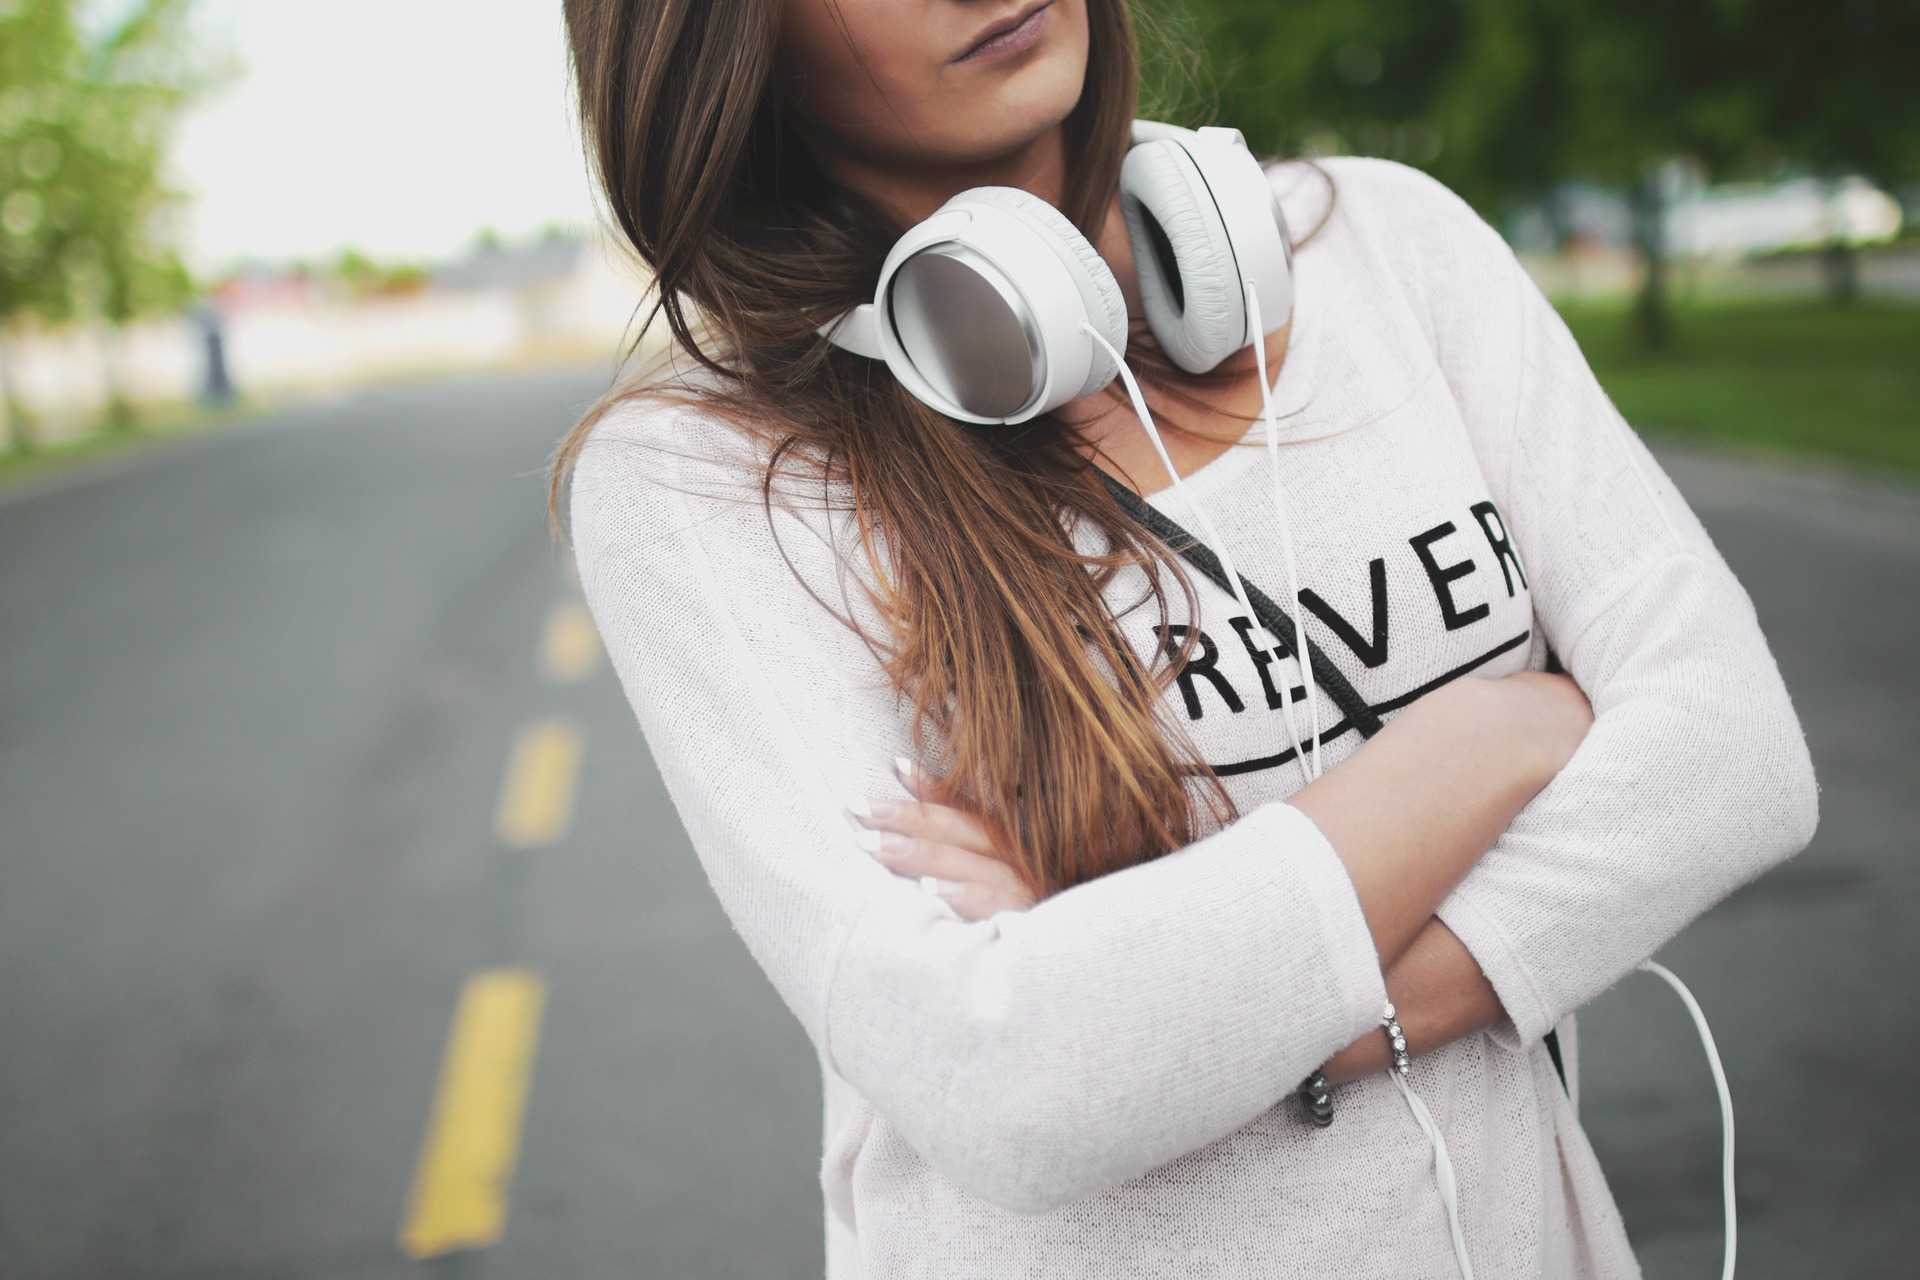 over-ear headphones